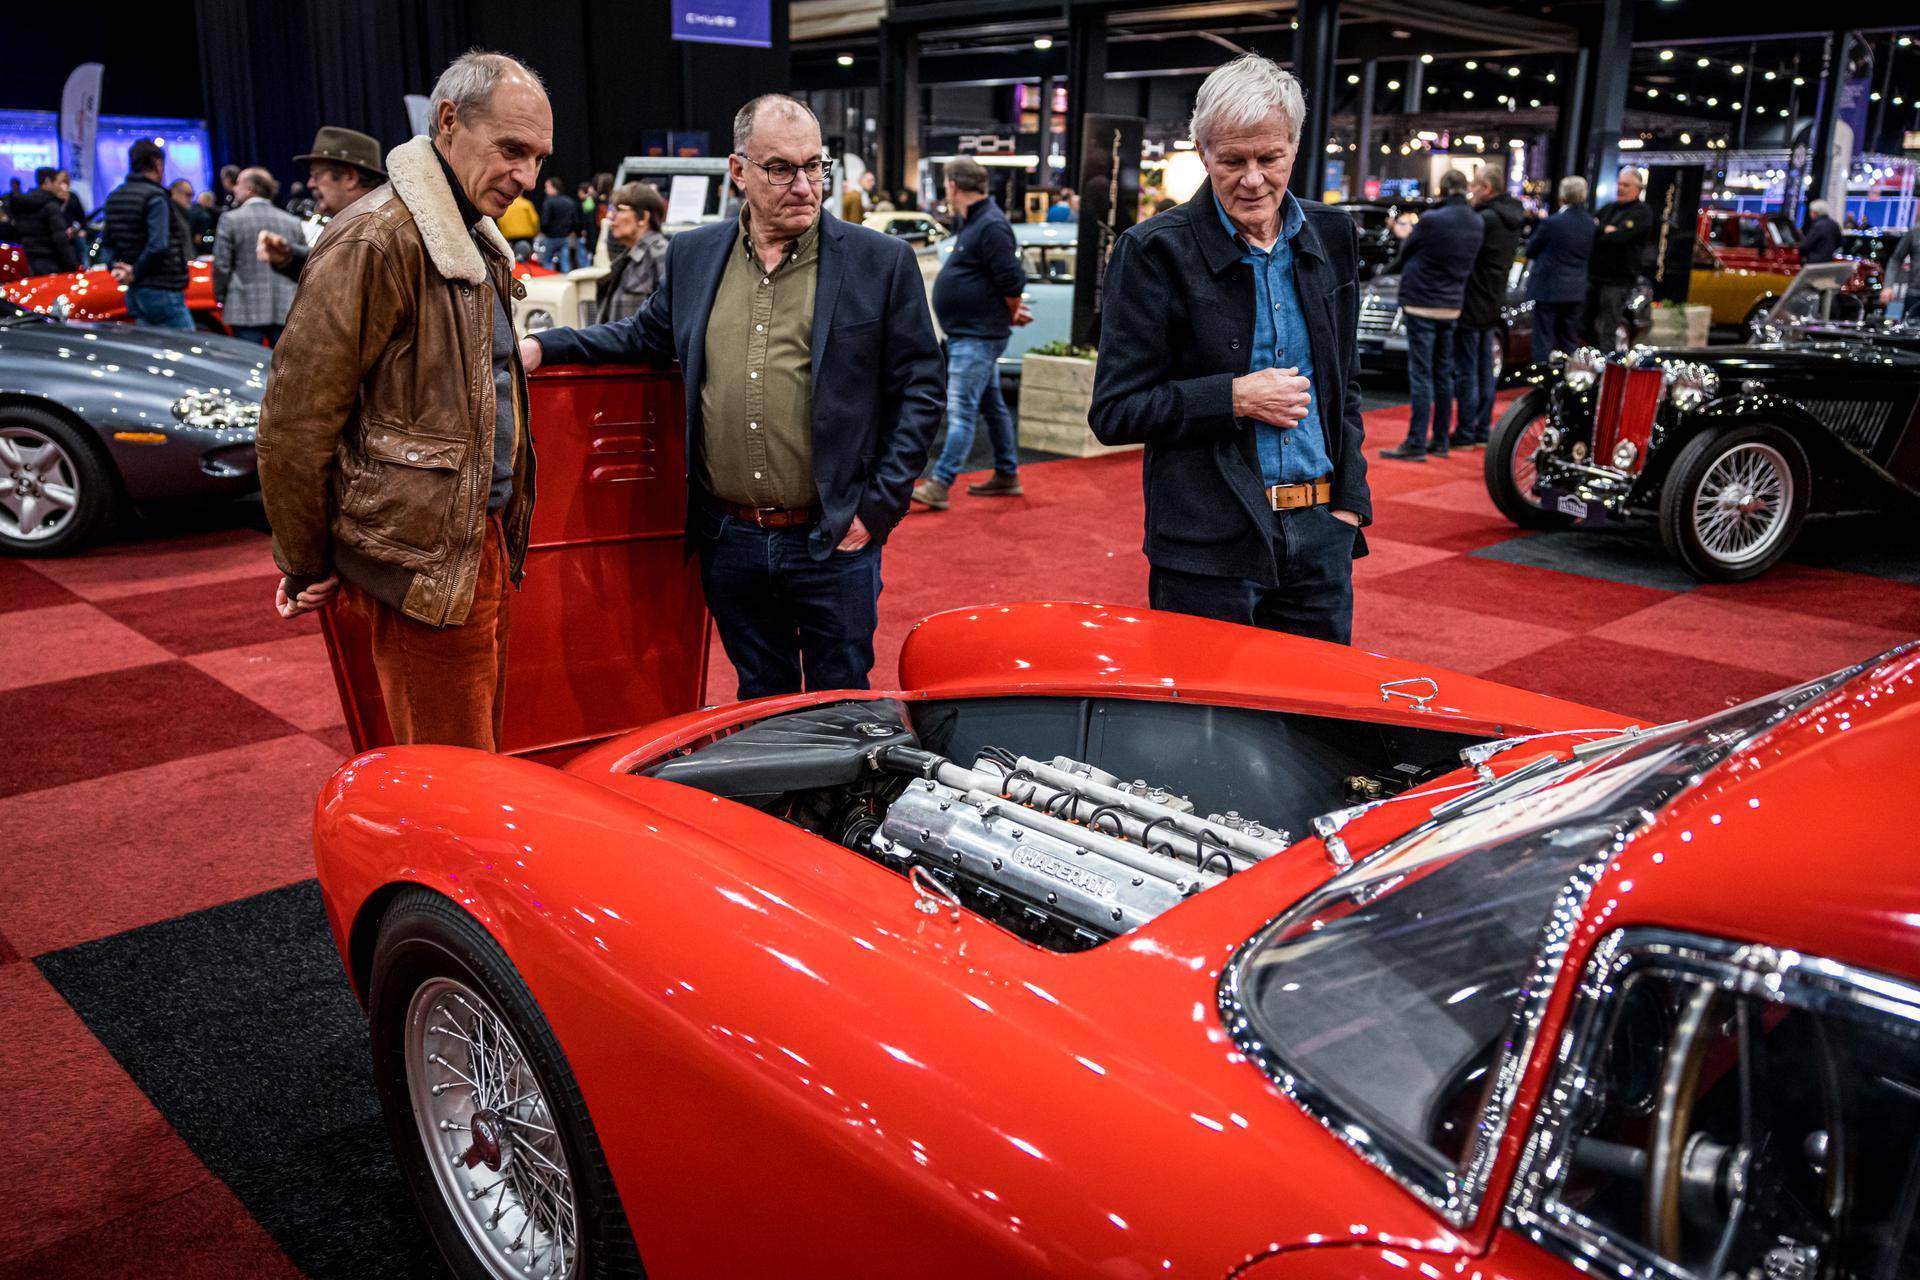 3 men looking at a red Maserati